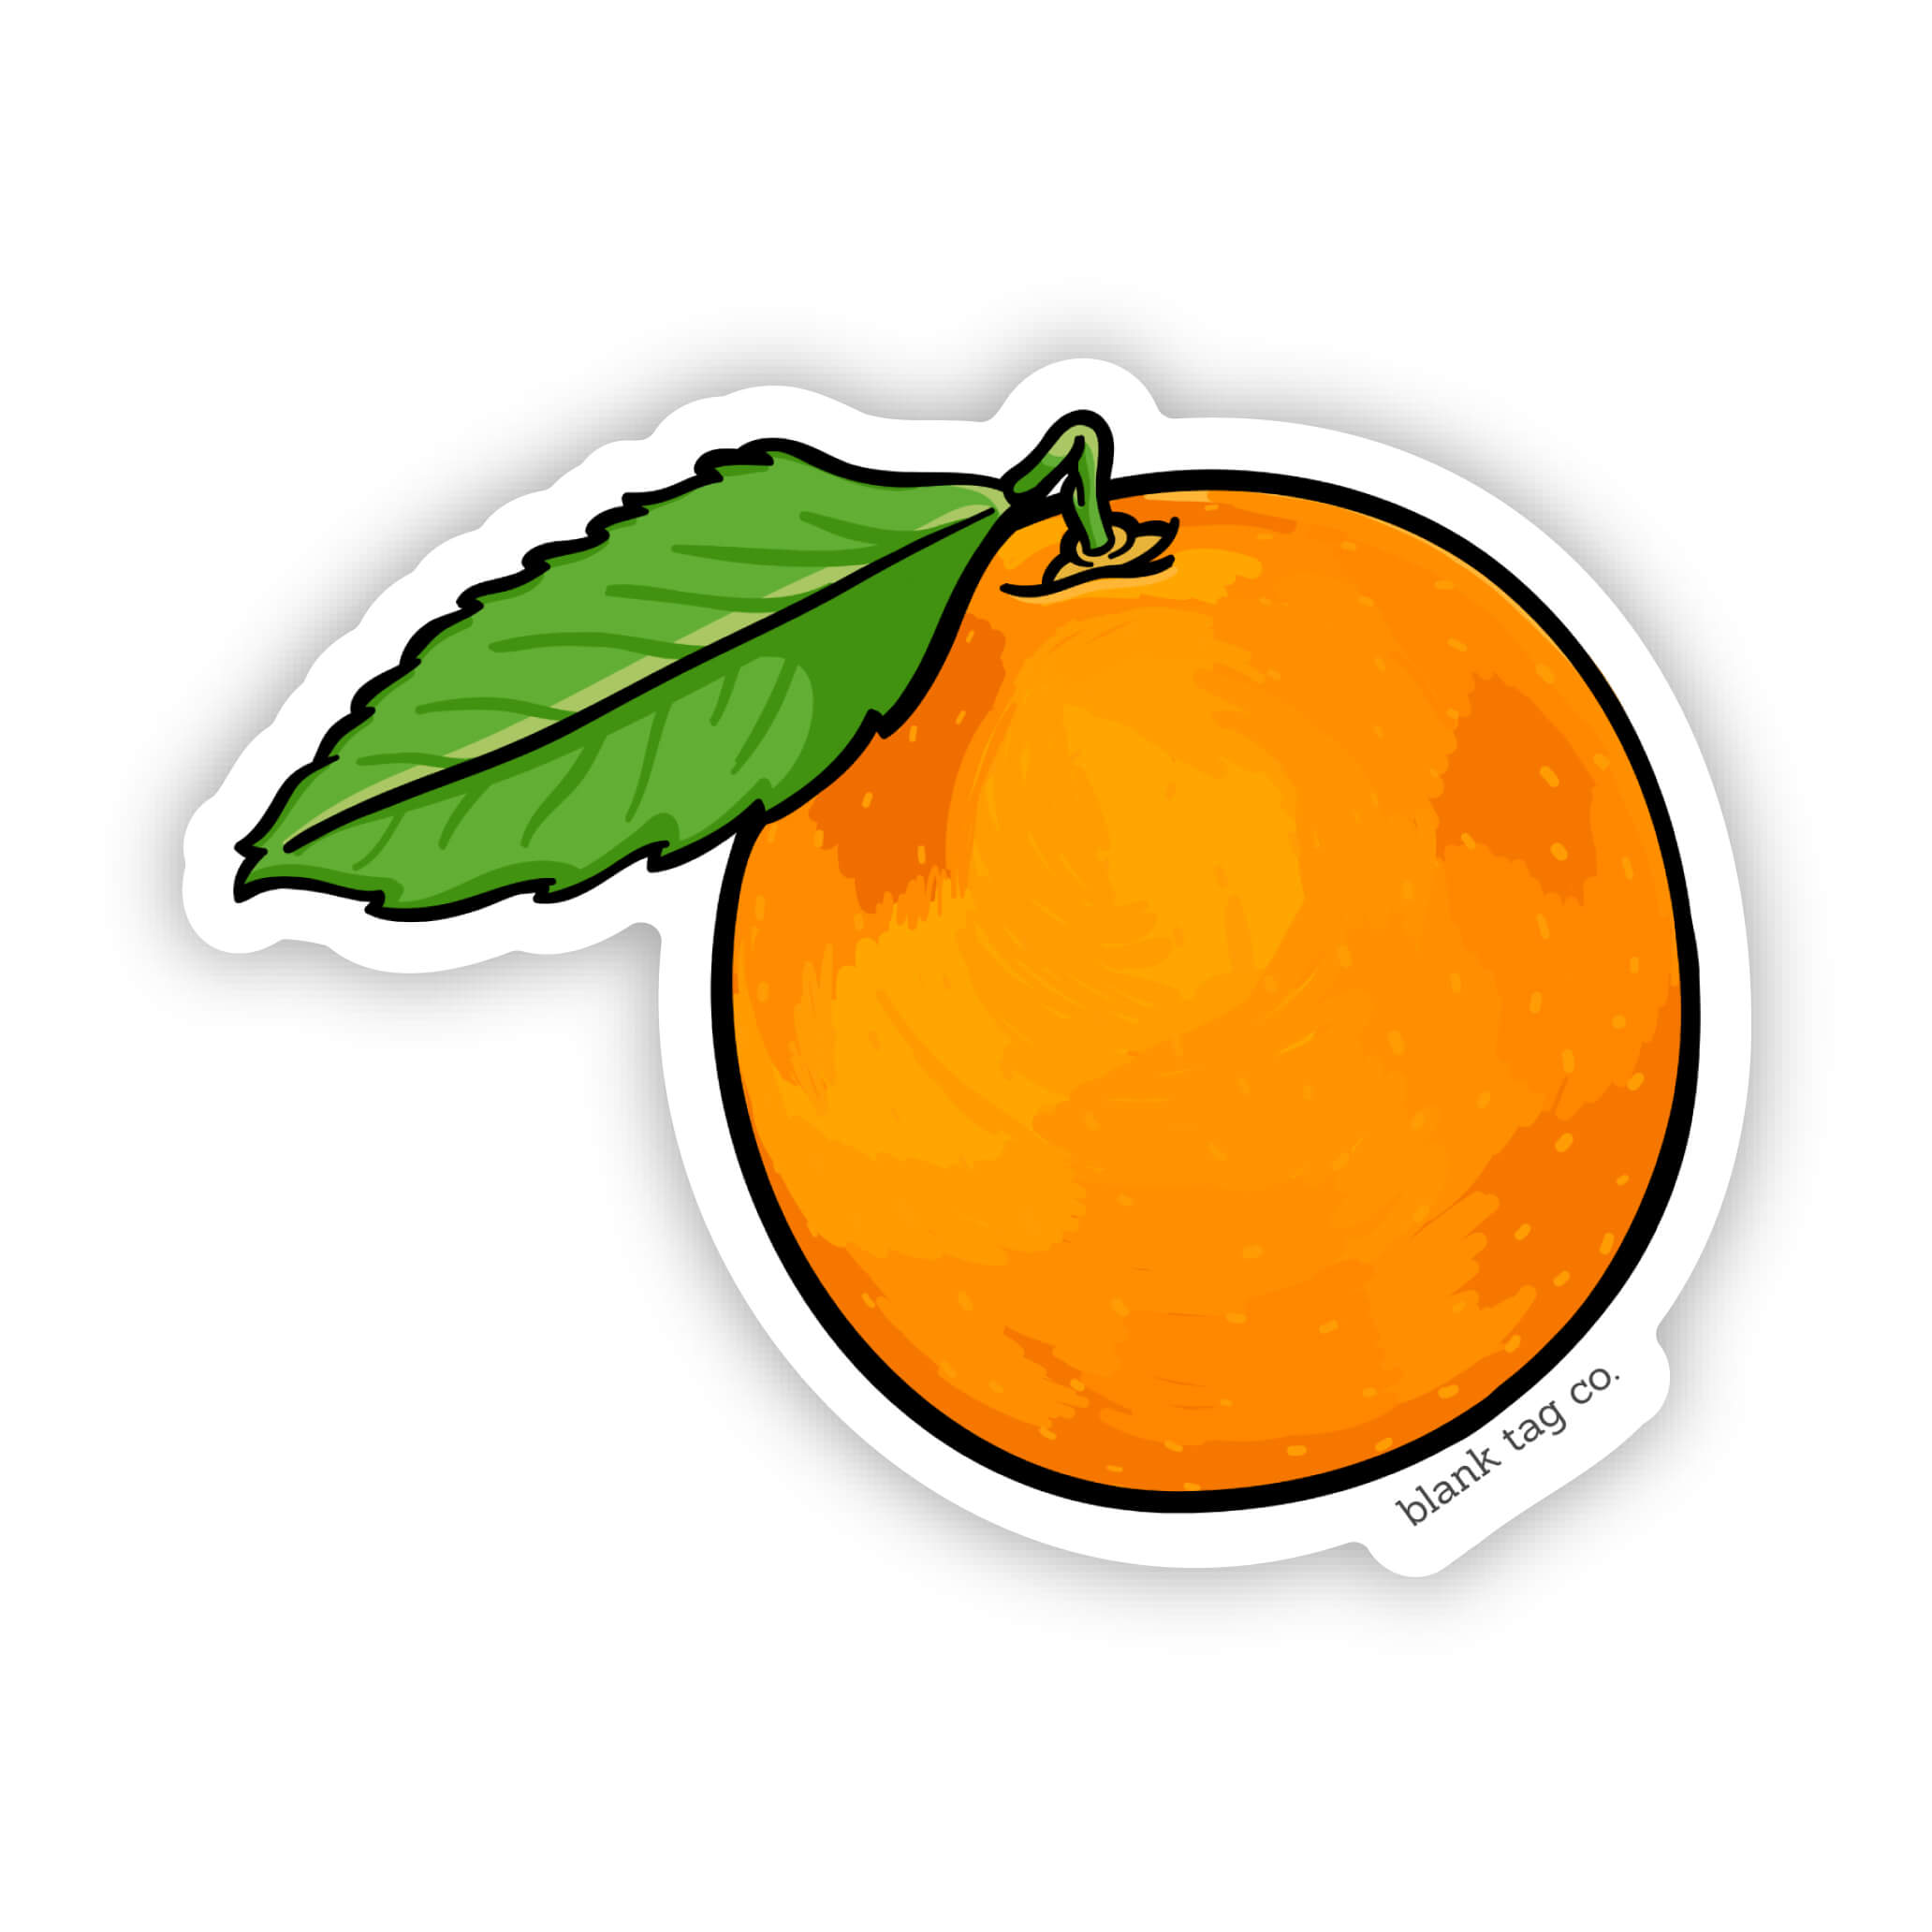 The Orange Sticker